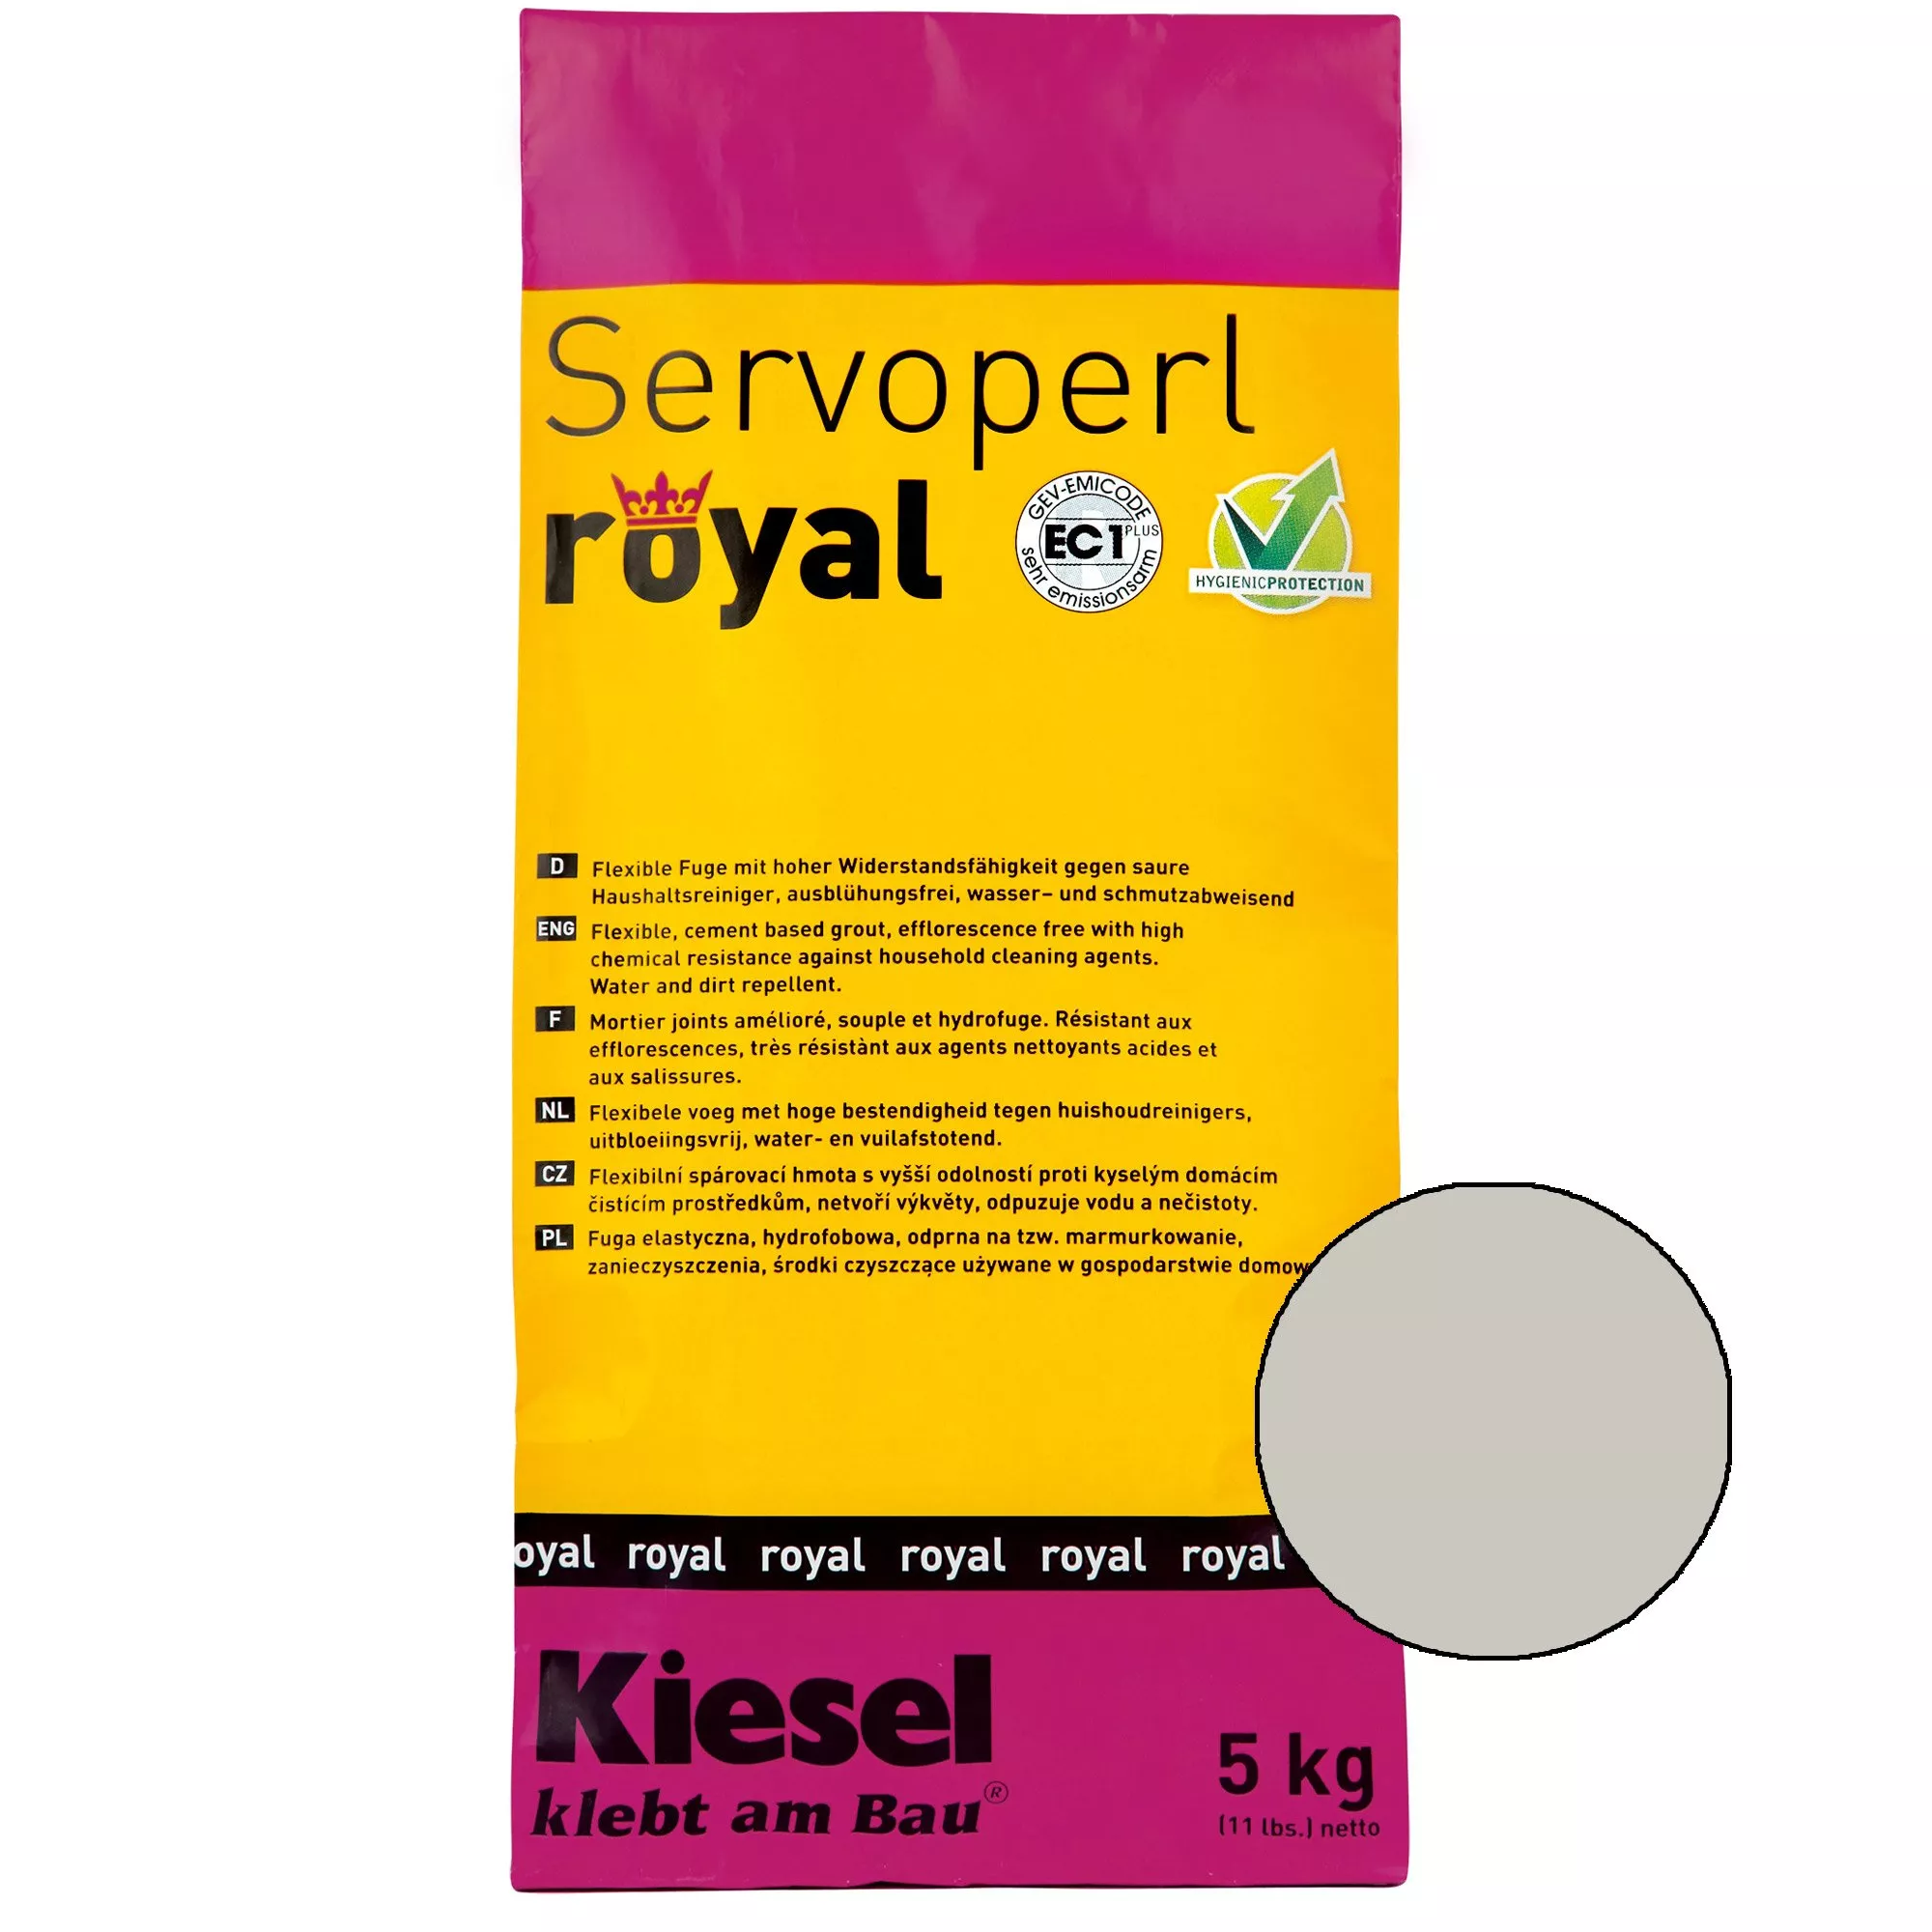 Kiesel Servoperl royal - Flexible, wasser- und schmutzabweisende Fuge (5KG Silbergrau)